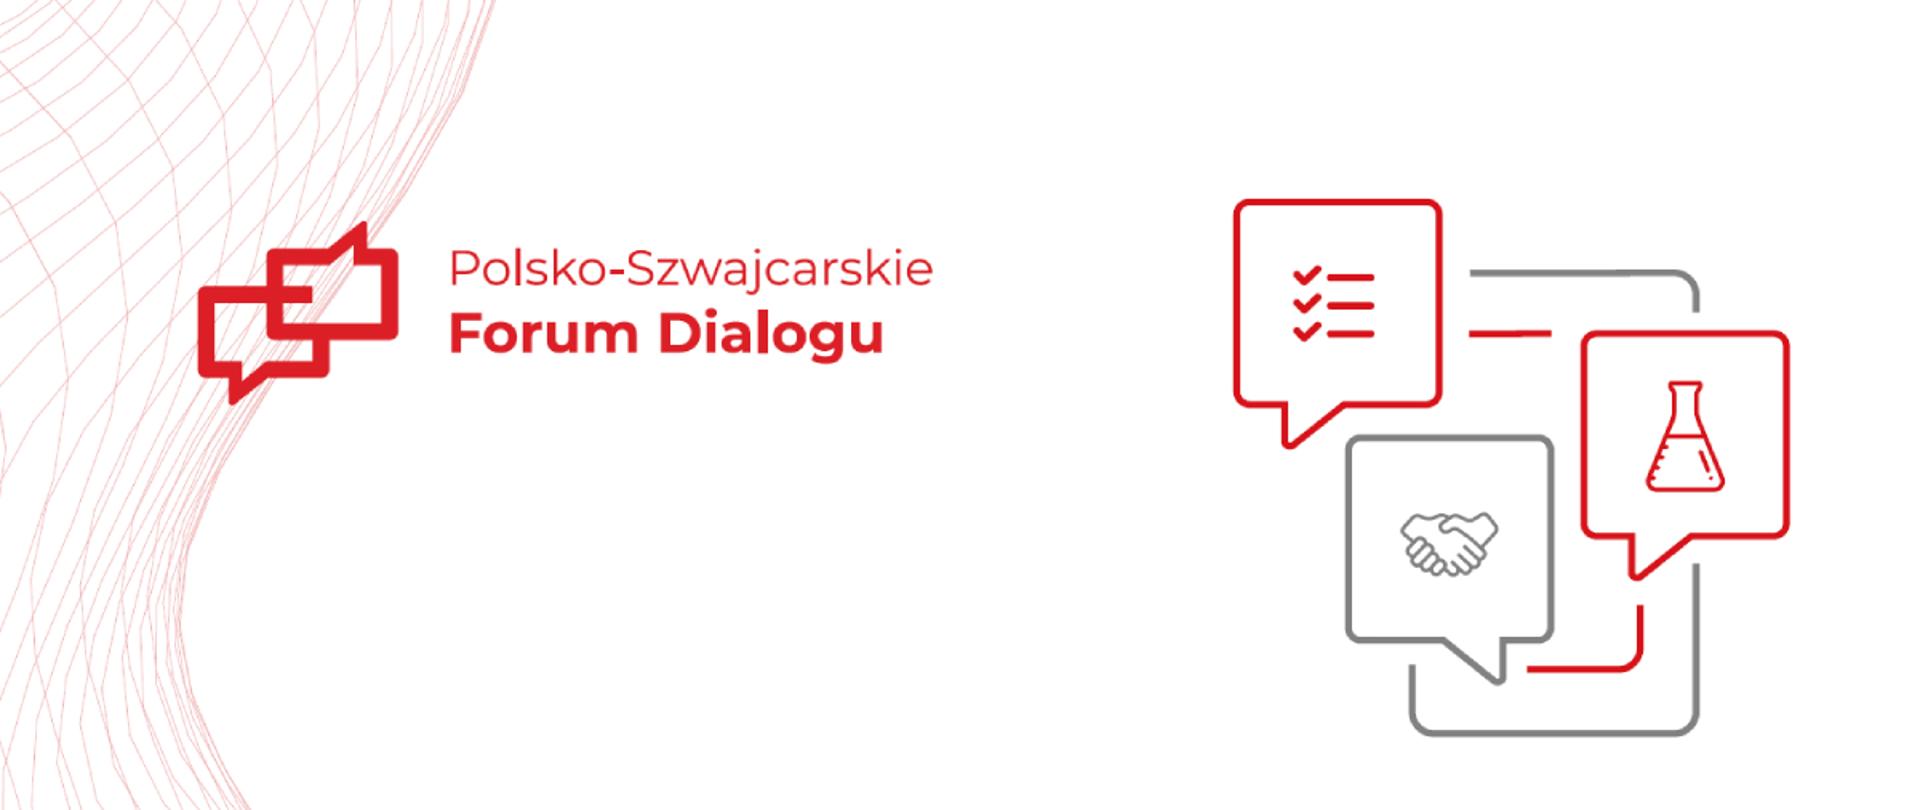 Polsko – Szwajcarskie Forum Dialogu dla Zdrowia